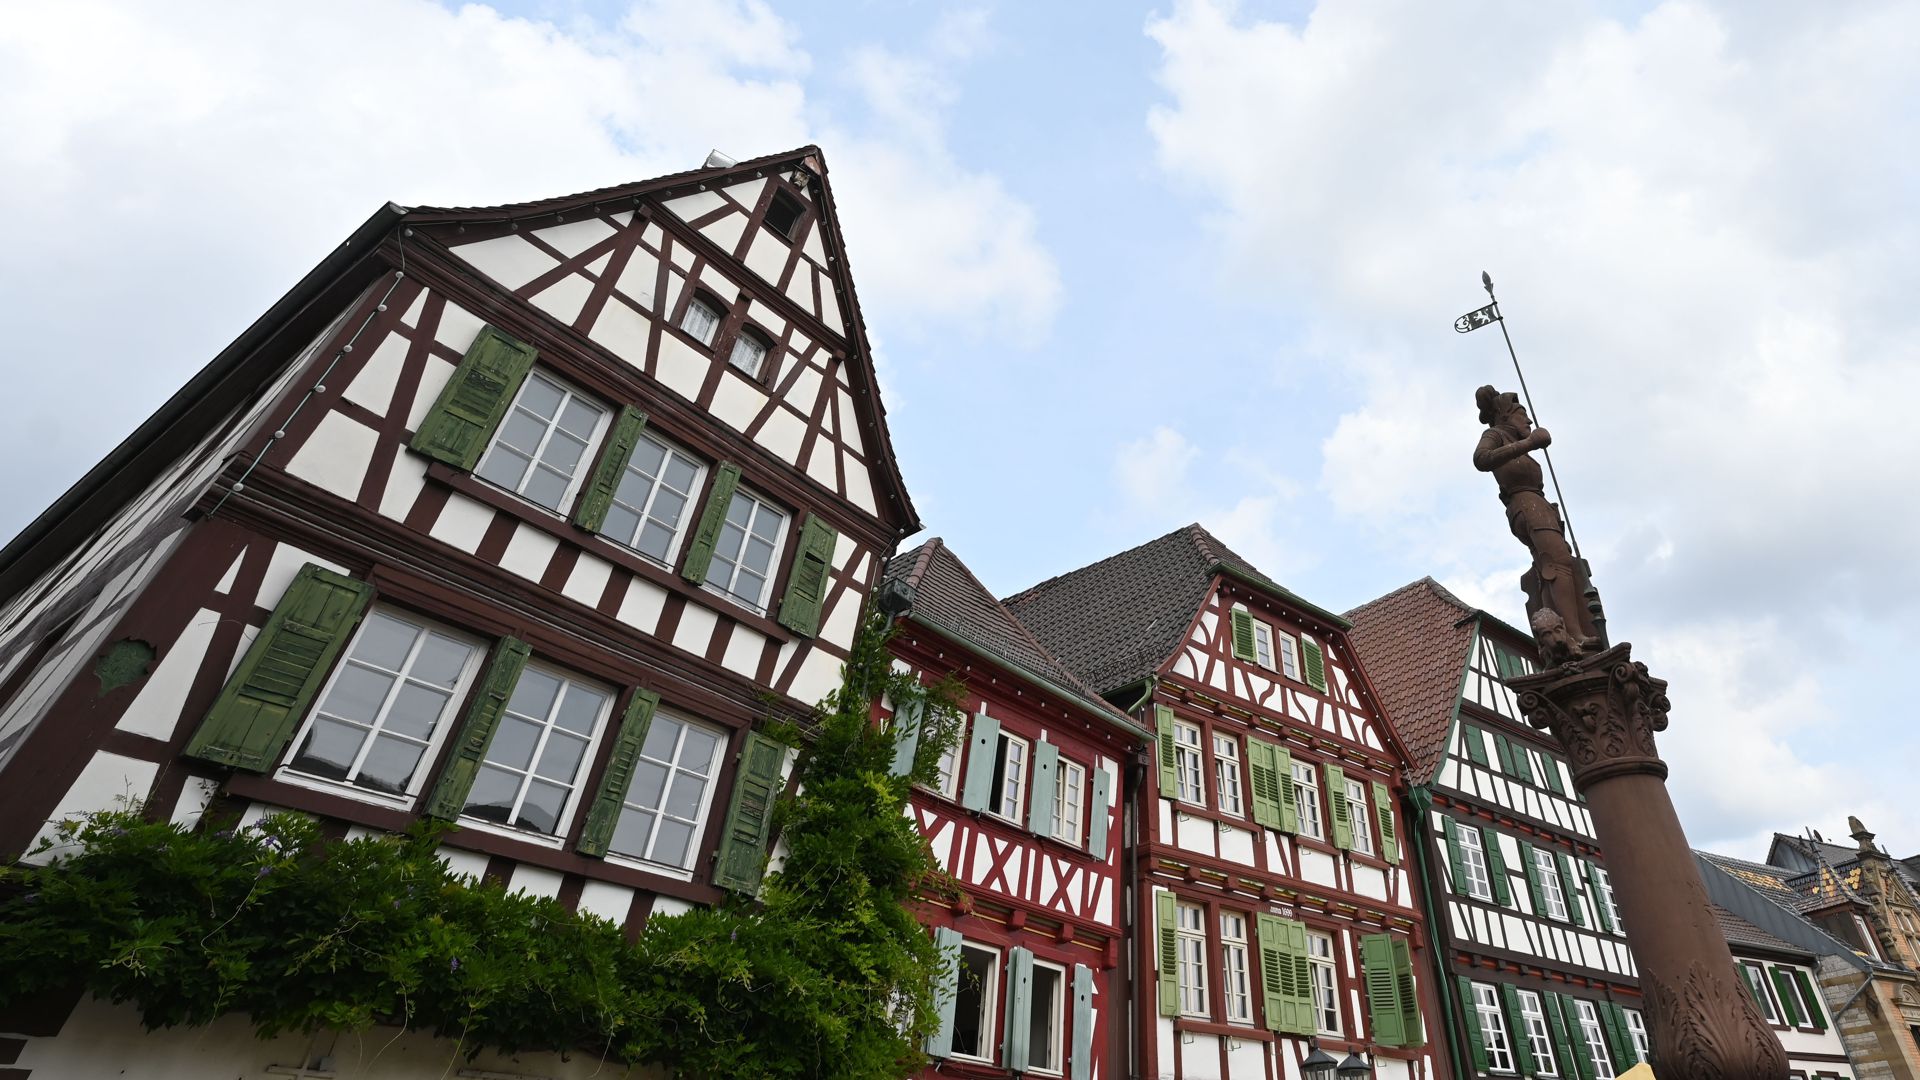 Bretten: Blick auf Fachwerkhäuser in der Altstadt am Marktplatz. 